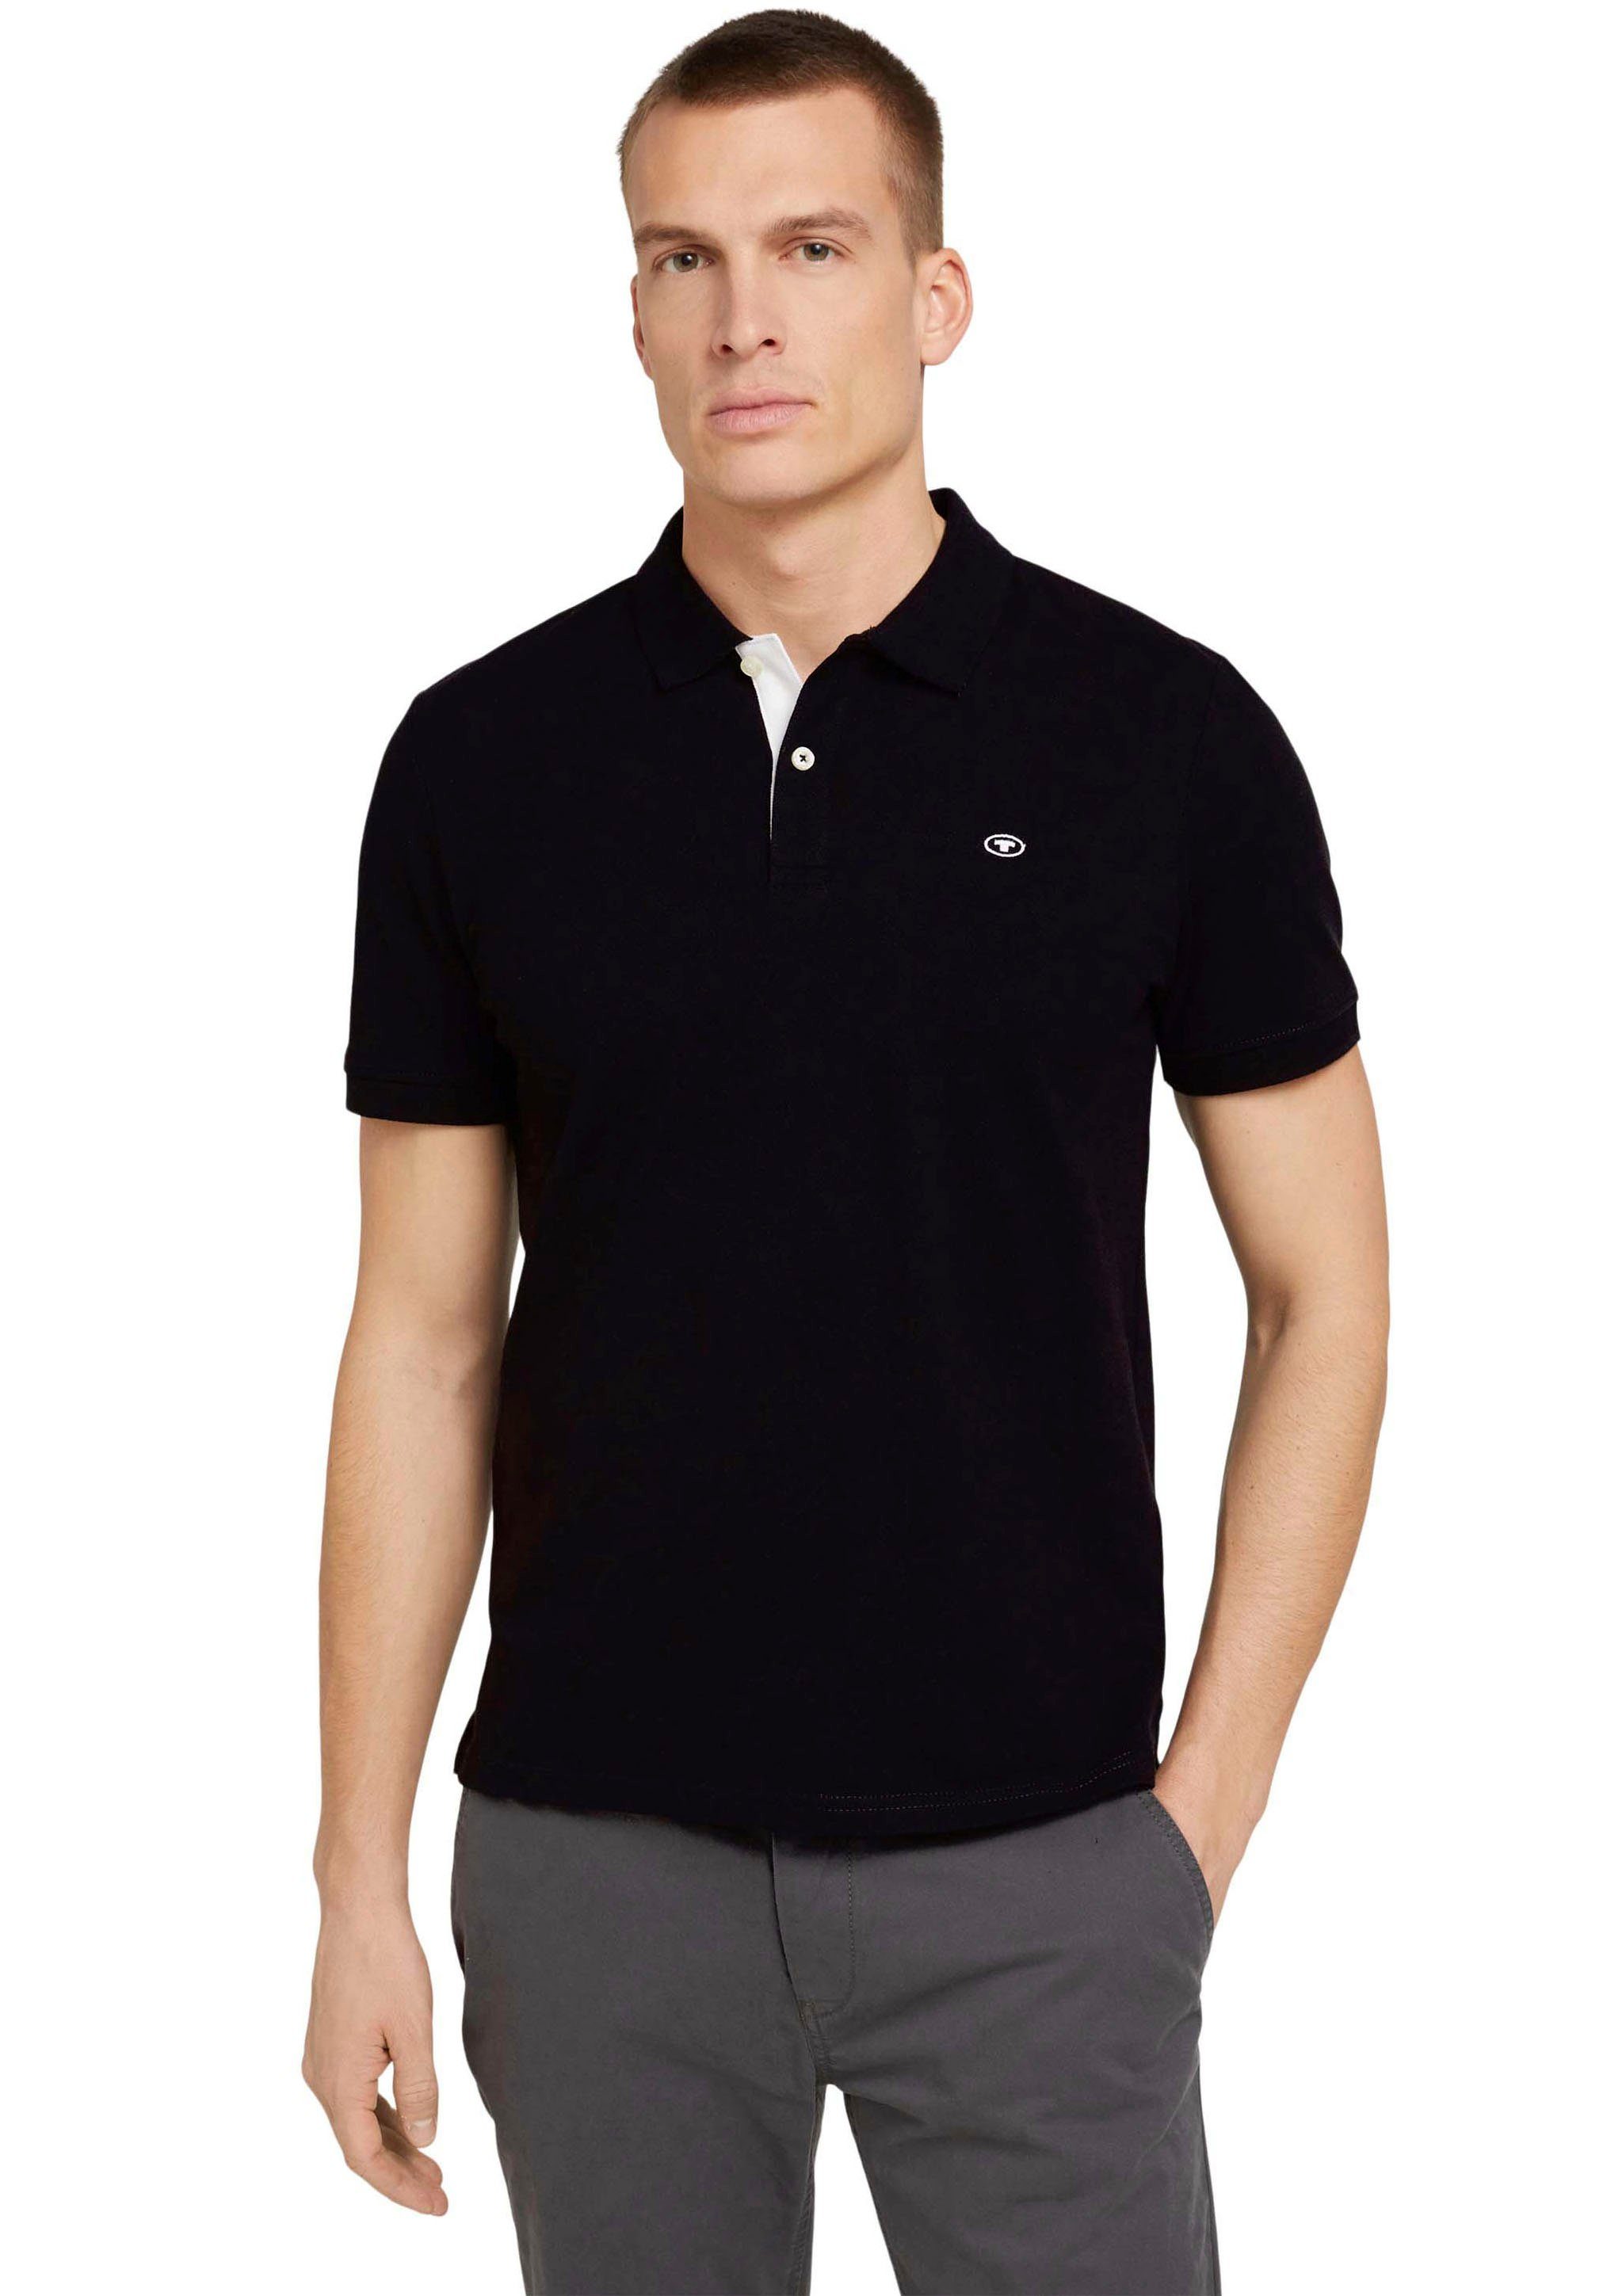 TOM TAILOR Poloshirt mit kontrastfarbener Knopfleiste und kleinem Logo black